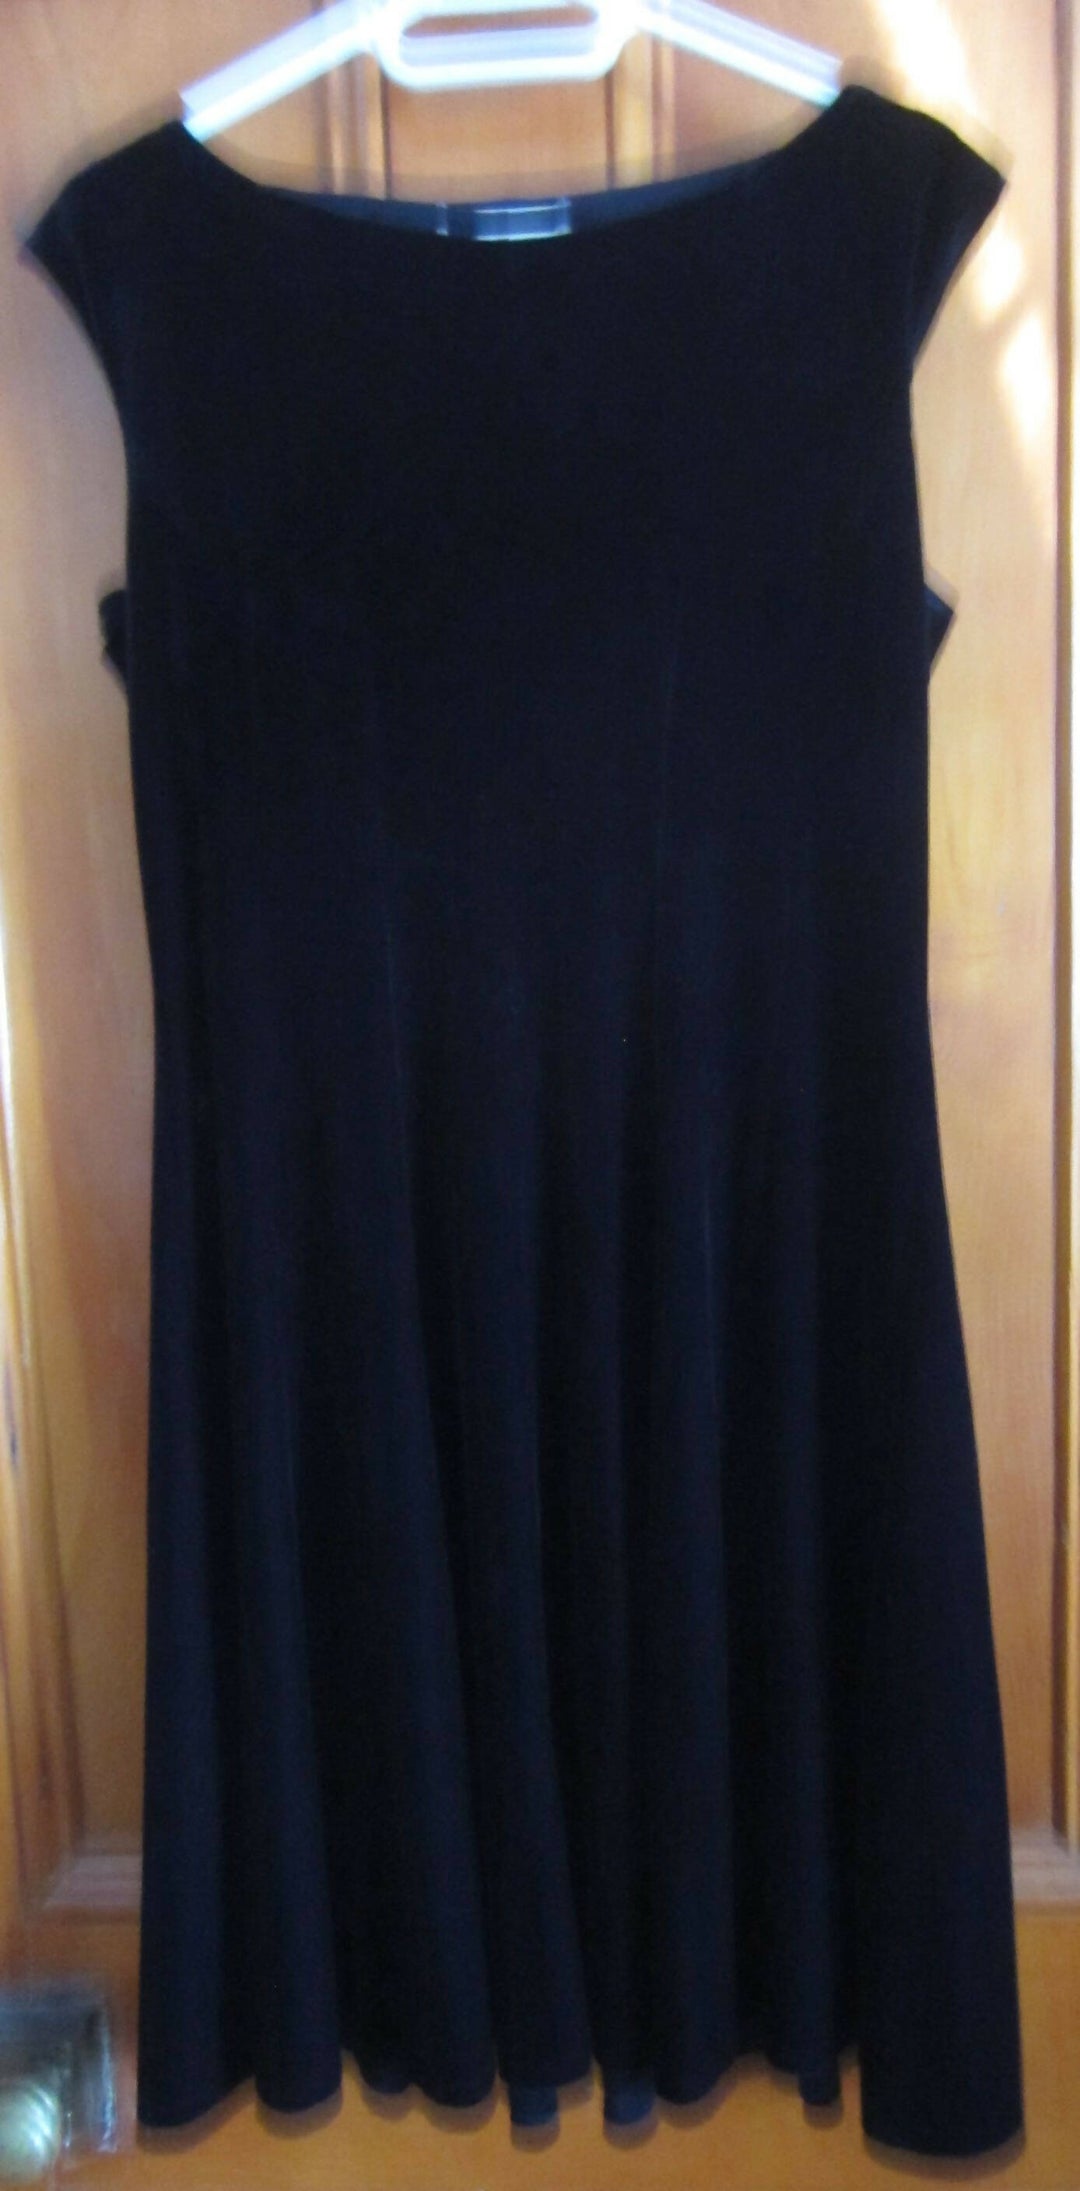 Image of Black Velvet Sleeveless Dress - Size 12 / M